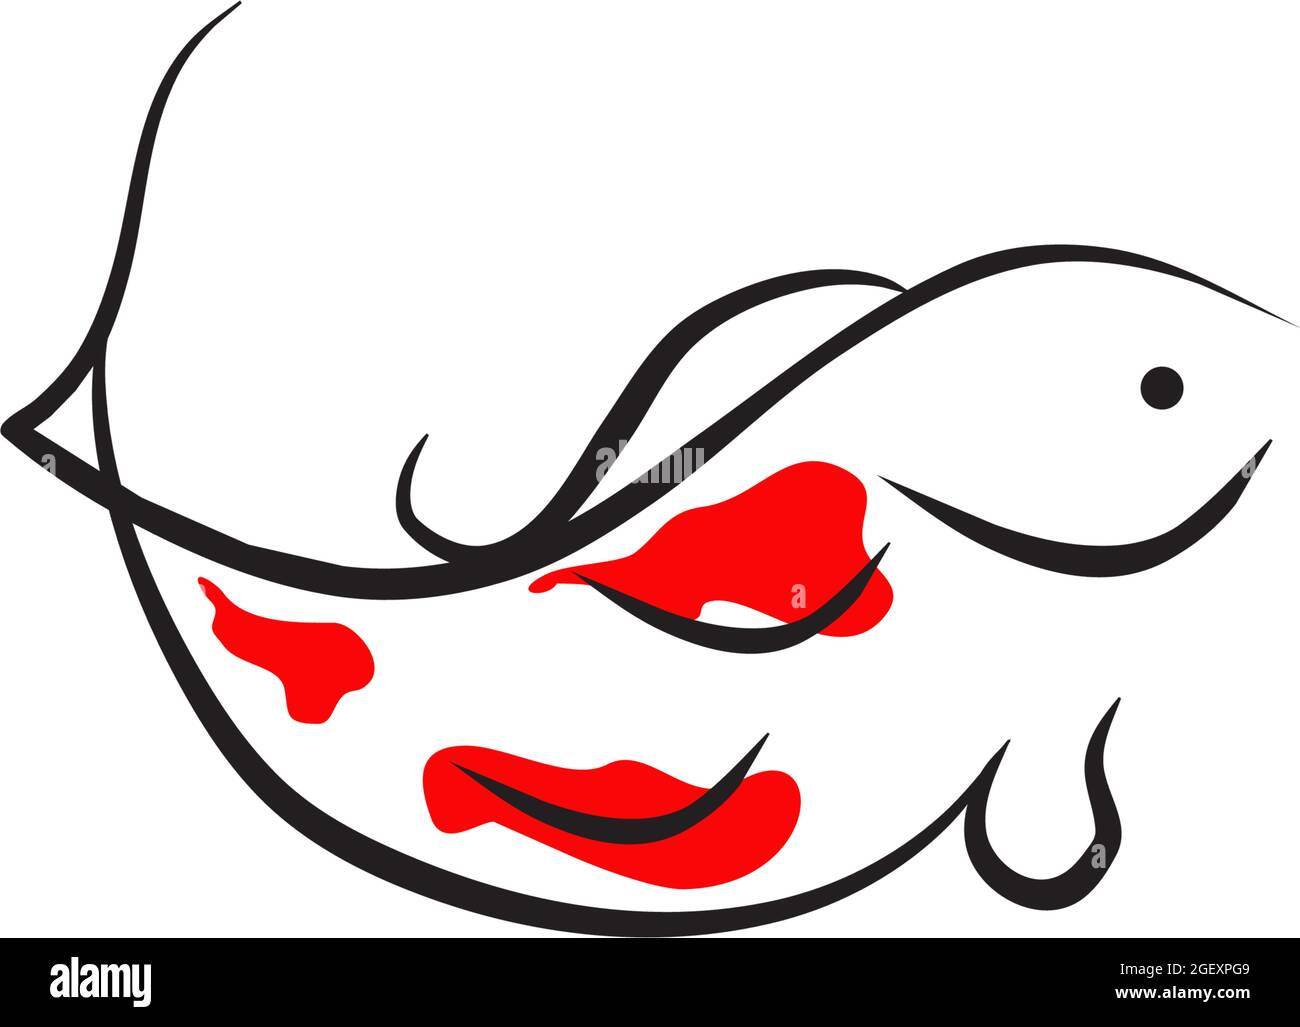 Koi fish logo design vector template Stock Vector